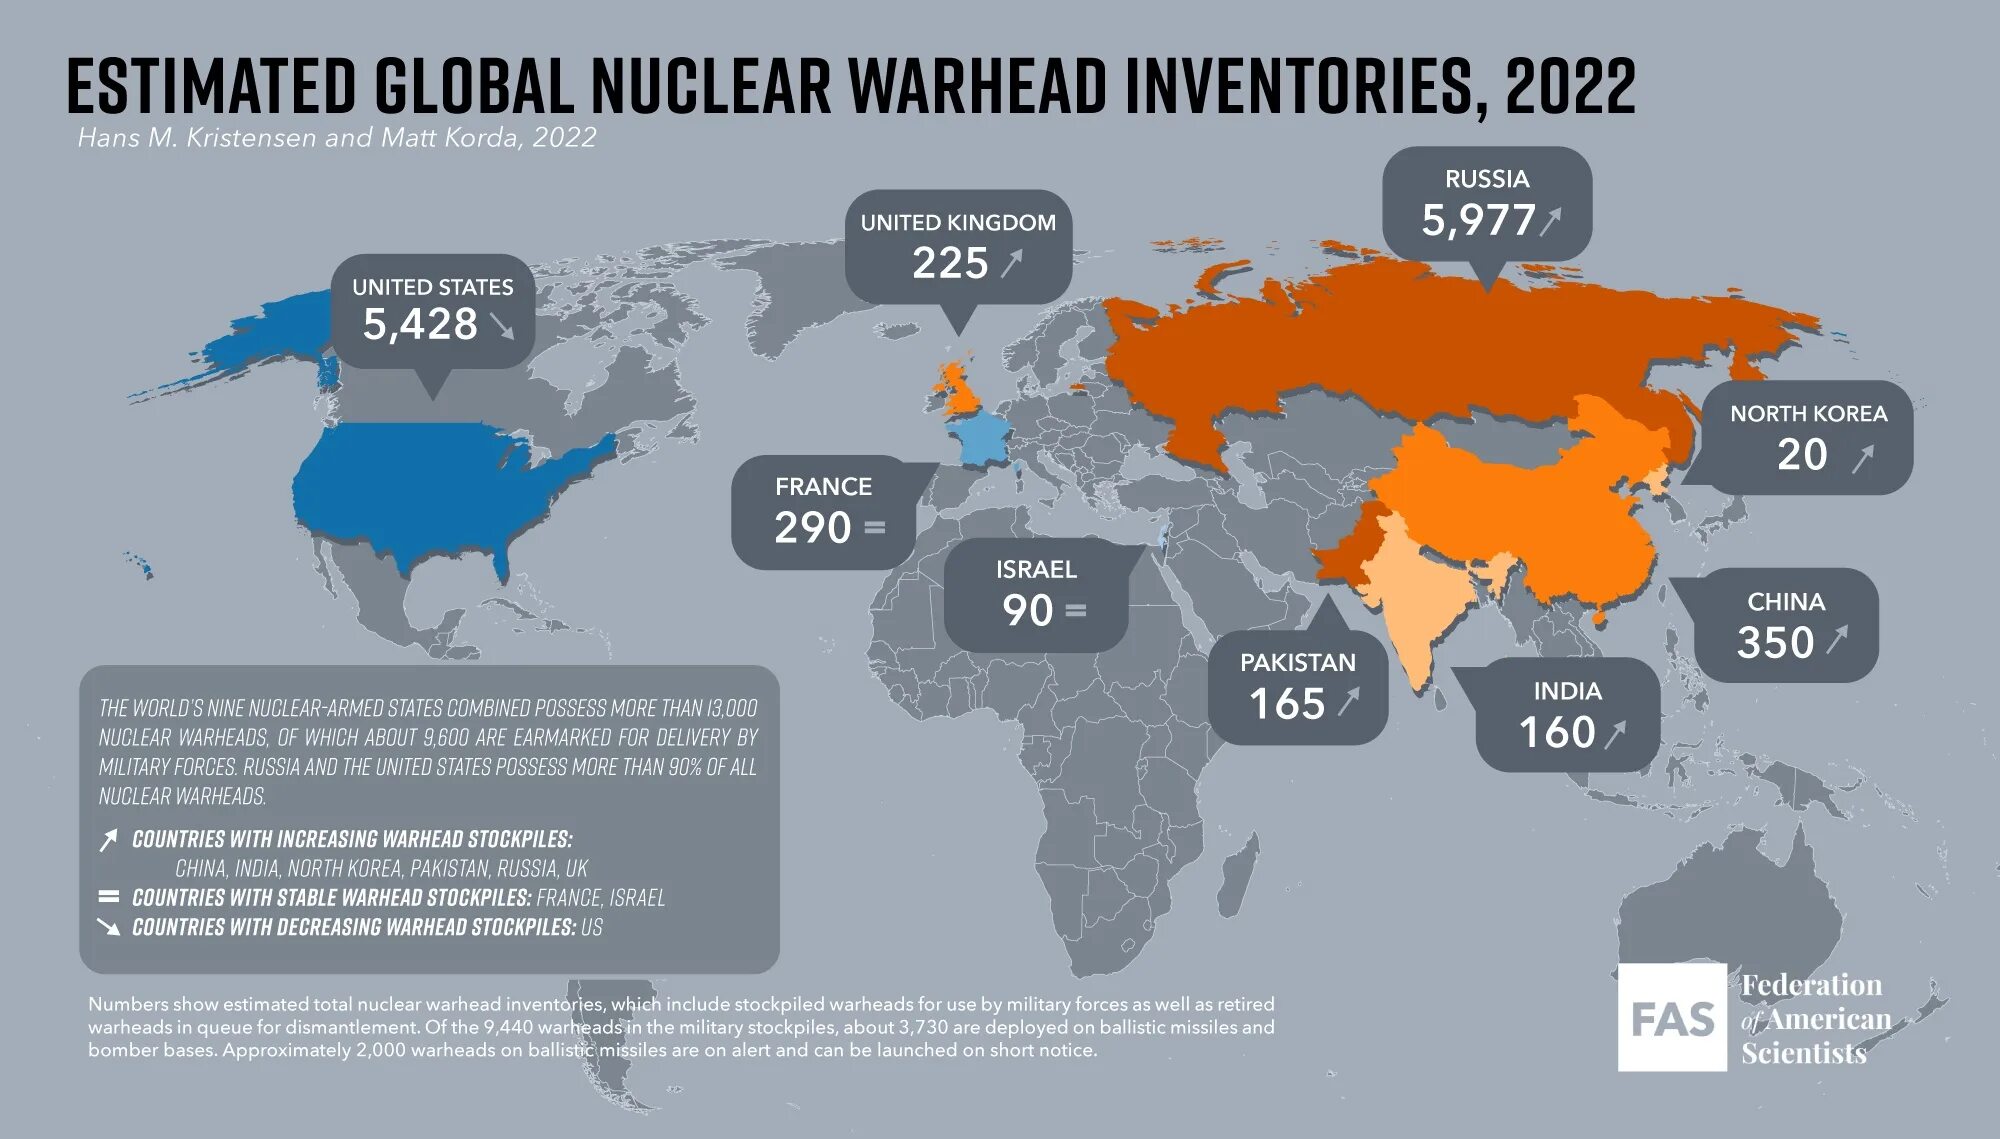 Имеет ли иран ядерное оружие. Страны с чдерным лоудием. Ядерные боеголовки по странам. Cnhfys c zlthysv JH. Количество ядерных боезарядов по странам.